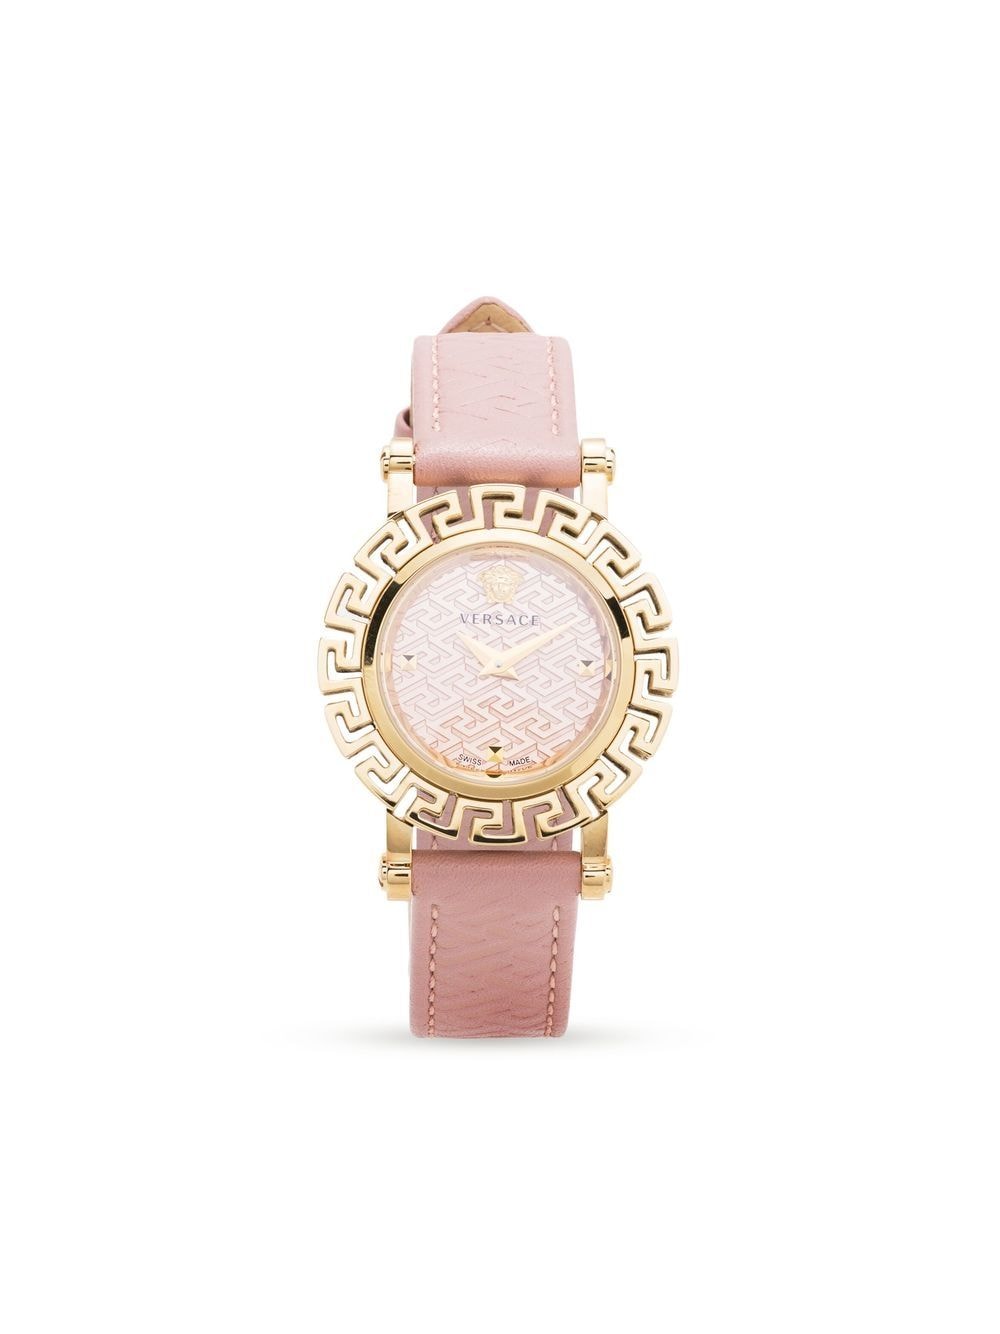 Versace ヴェルサーチェ グレカ グラム 30mm 腕時計 - Farfetch